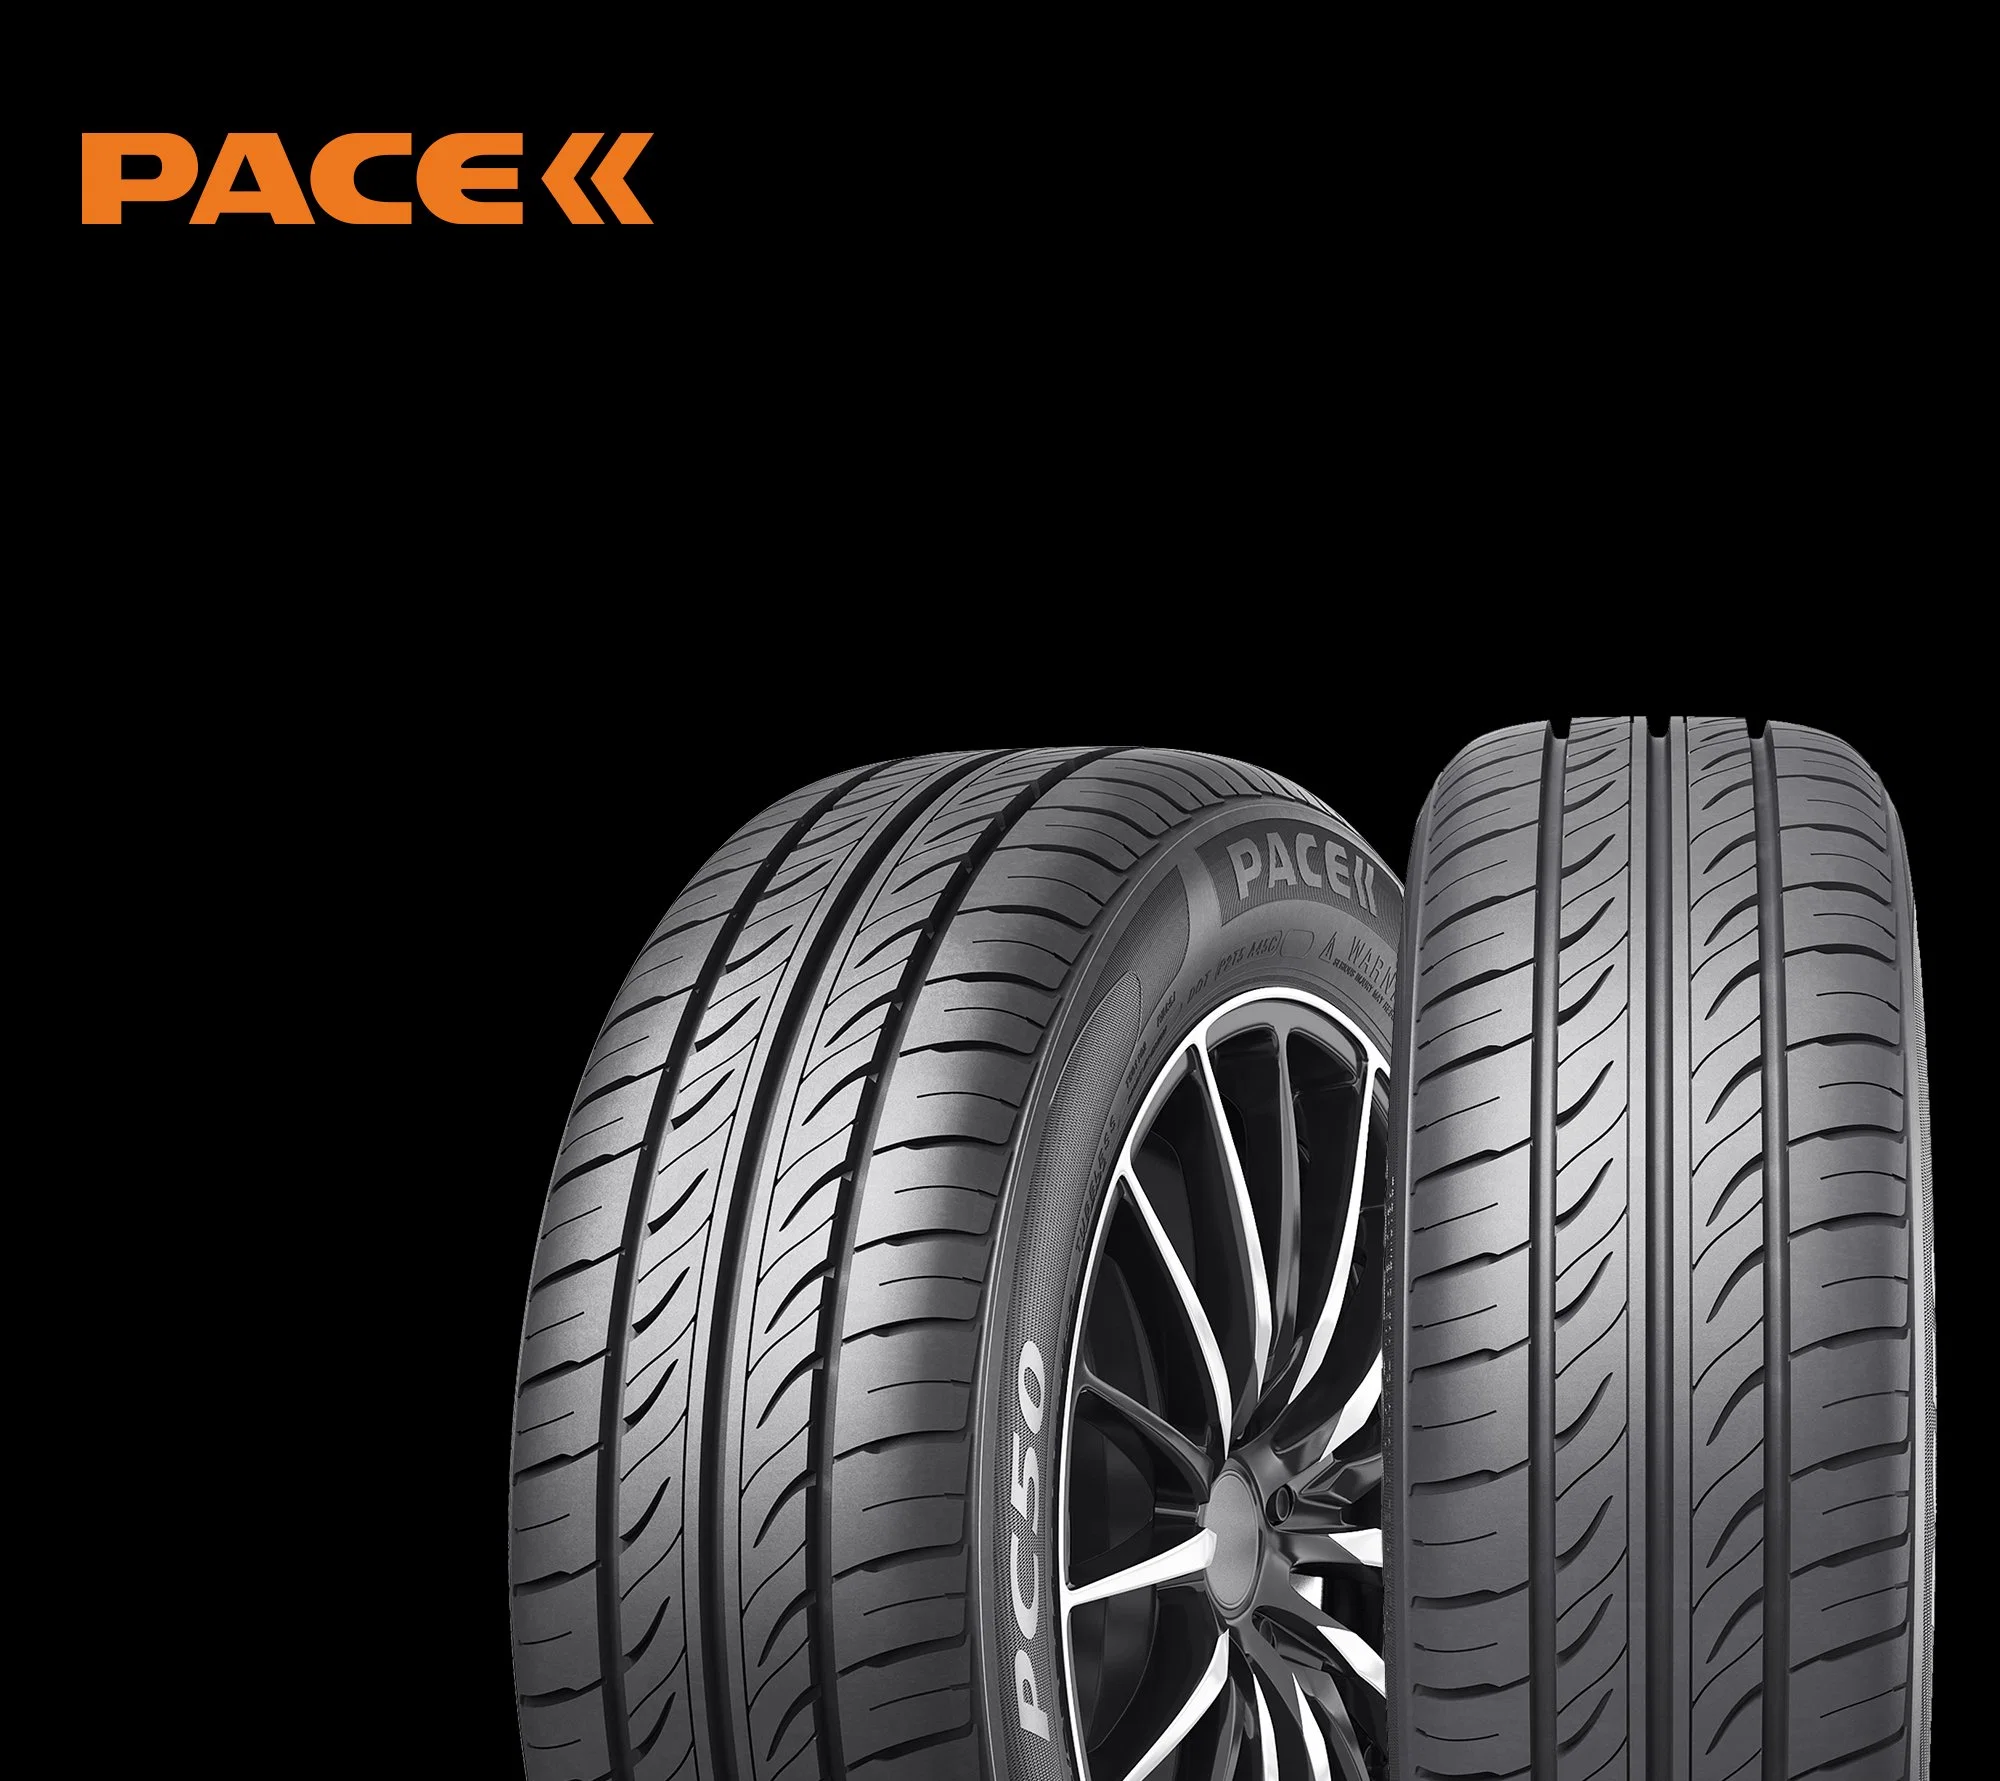 Neumáticos usados como neumáticos de coches Certificada con un punto, la CEPE, CCC y Emark